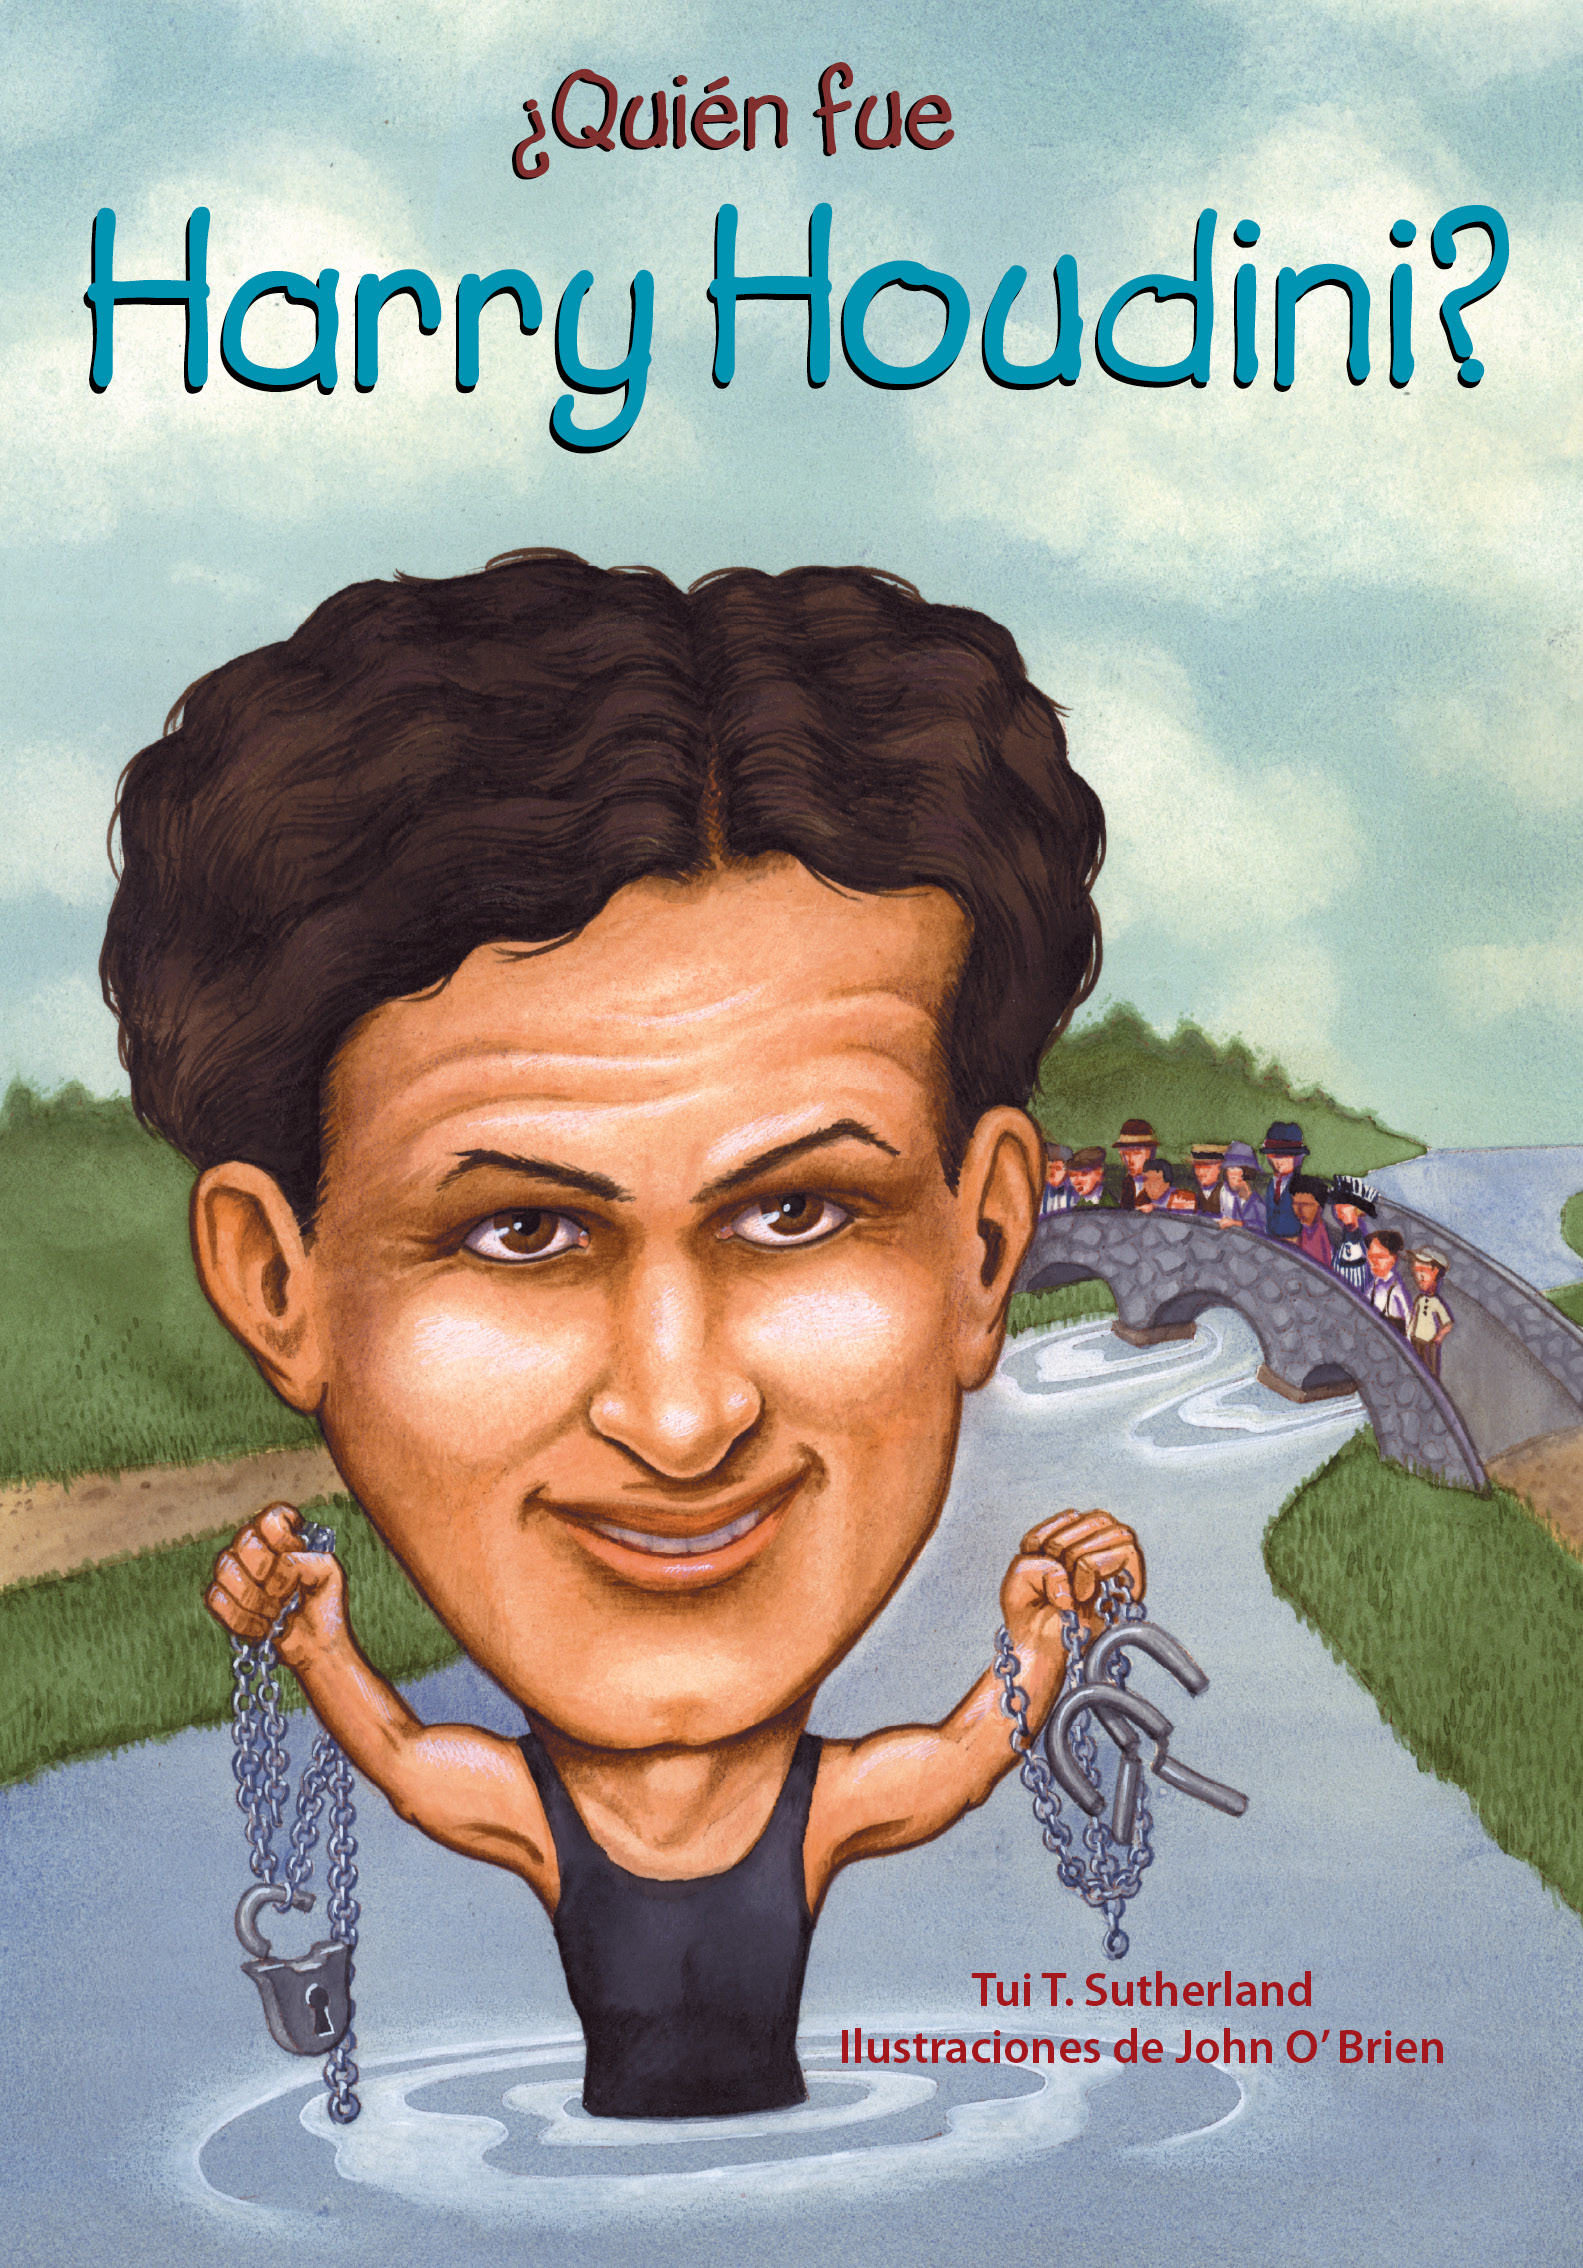 ¿Quién fue Harry Houdini?